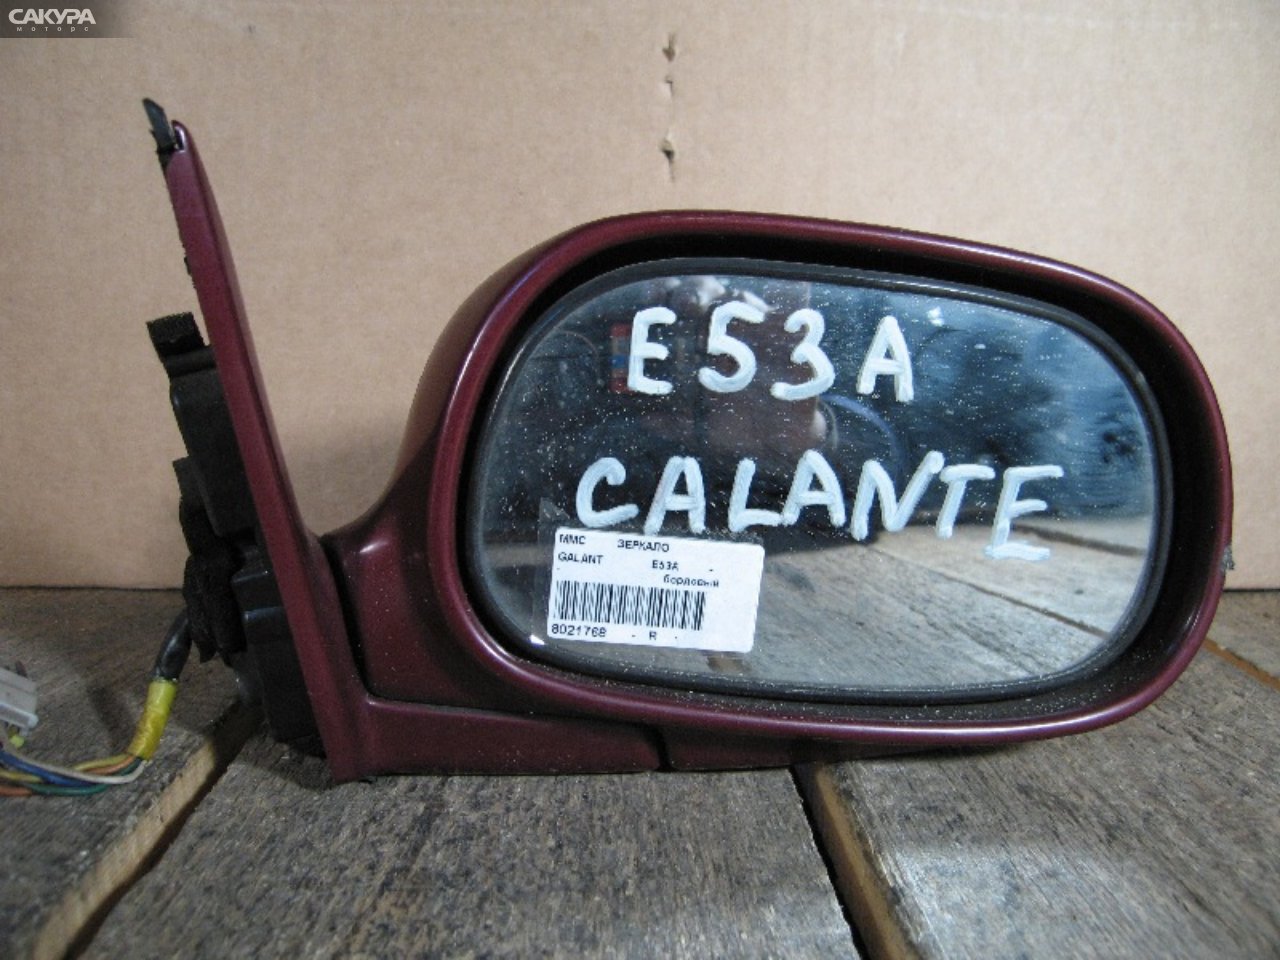 Зеркало боковое правое Mitsubishi Galant E53A: купить в Сакура Абакан.